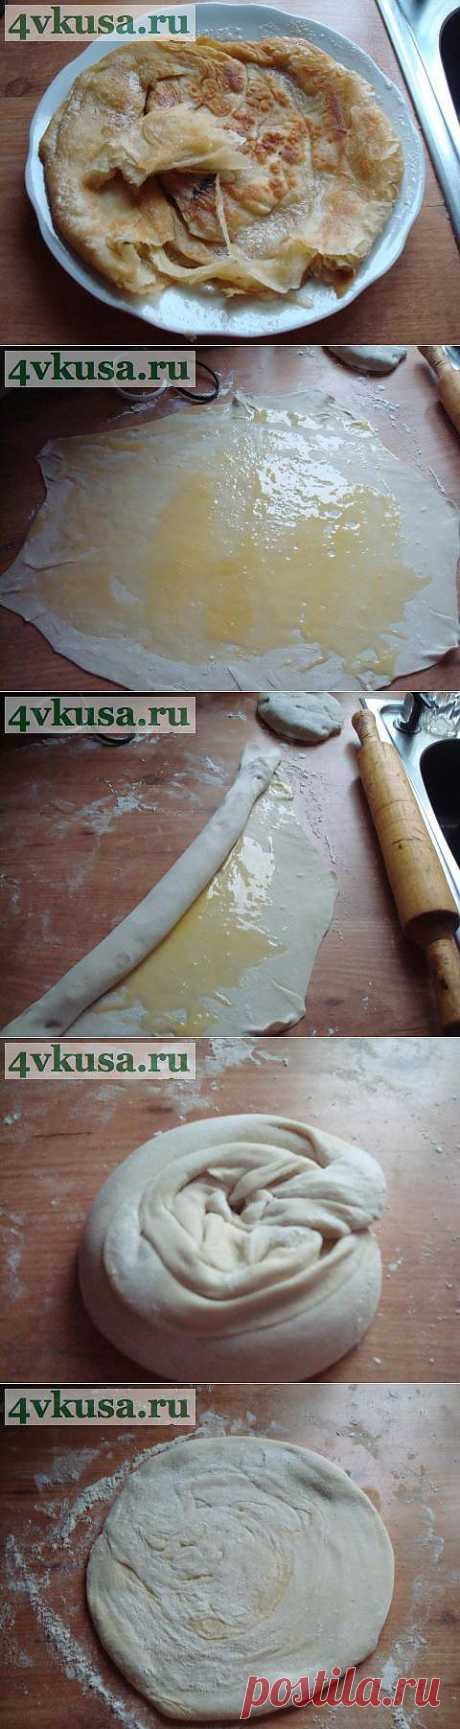 Слоёные лепёшки | 4vkusa.ru